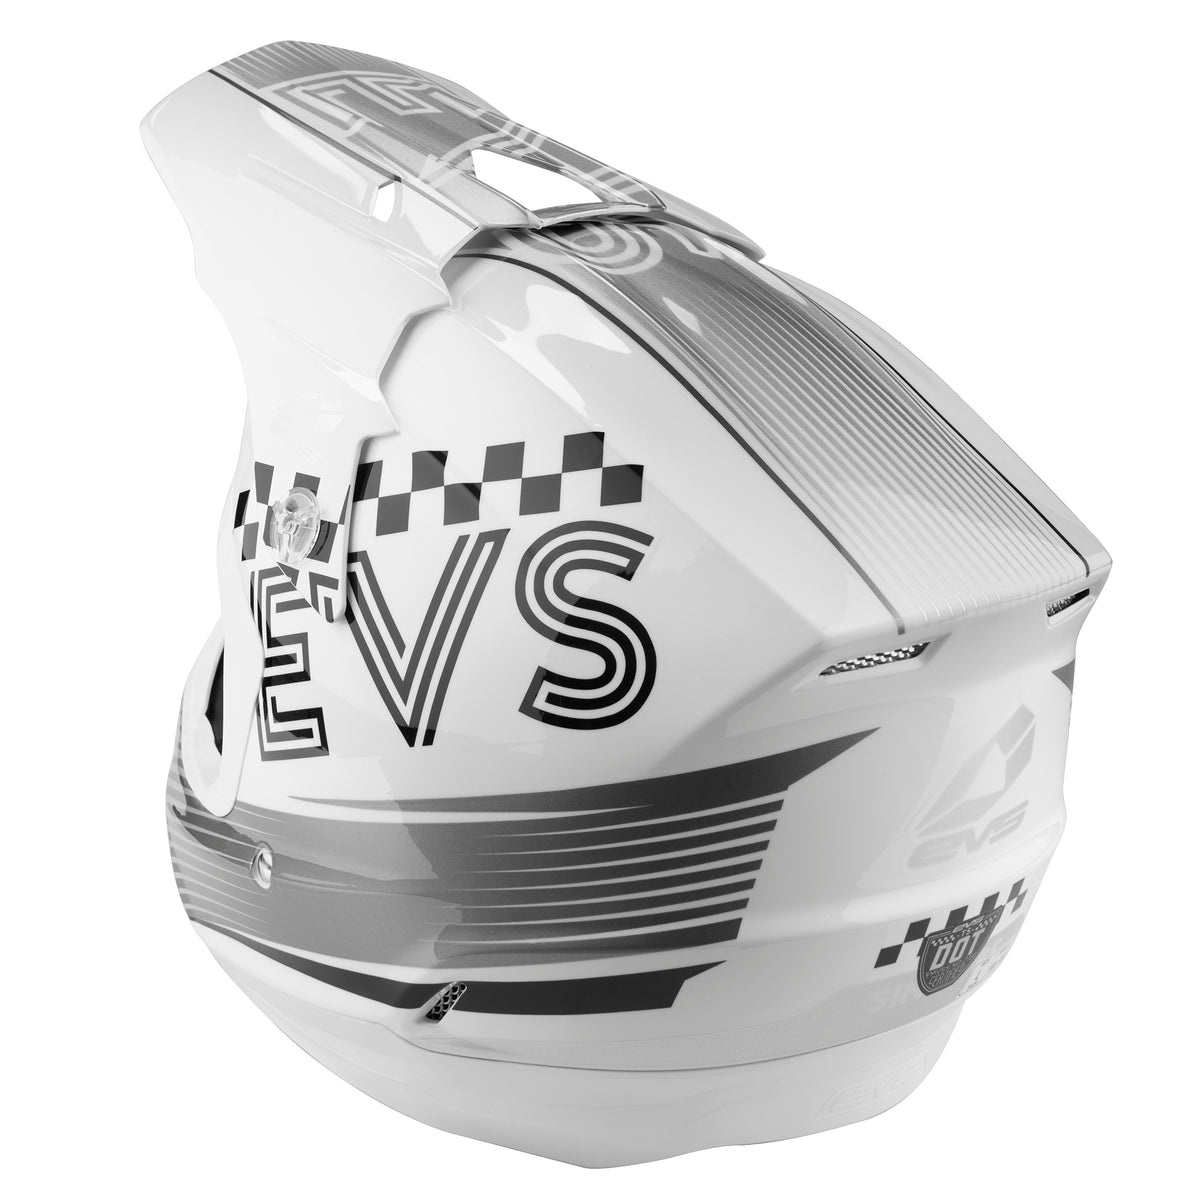 T5 Helmet - Torino White - EVS Sports